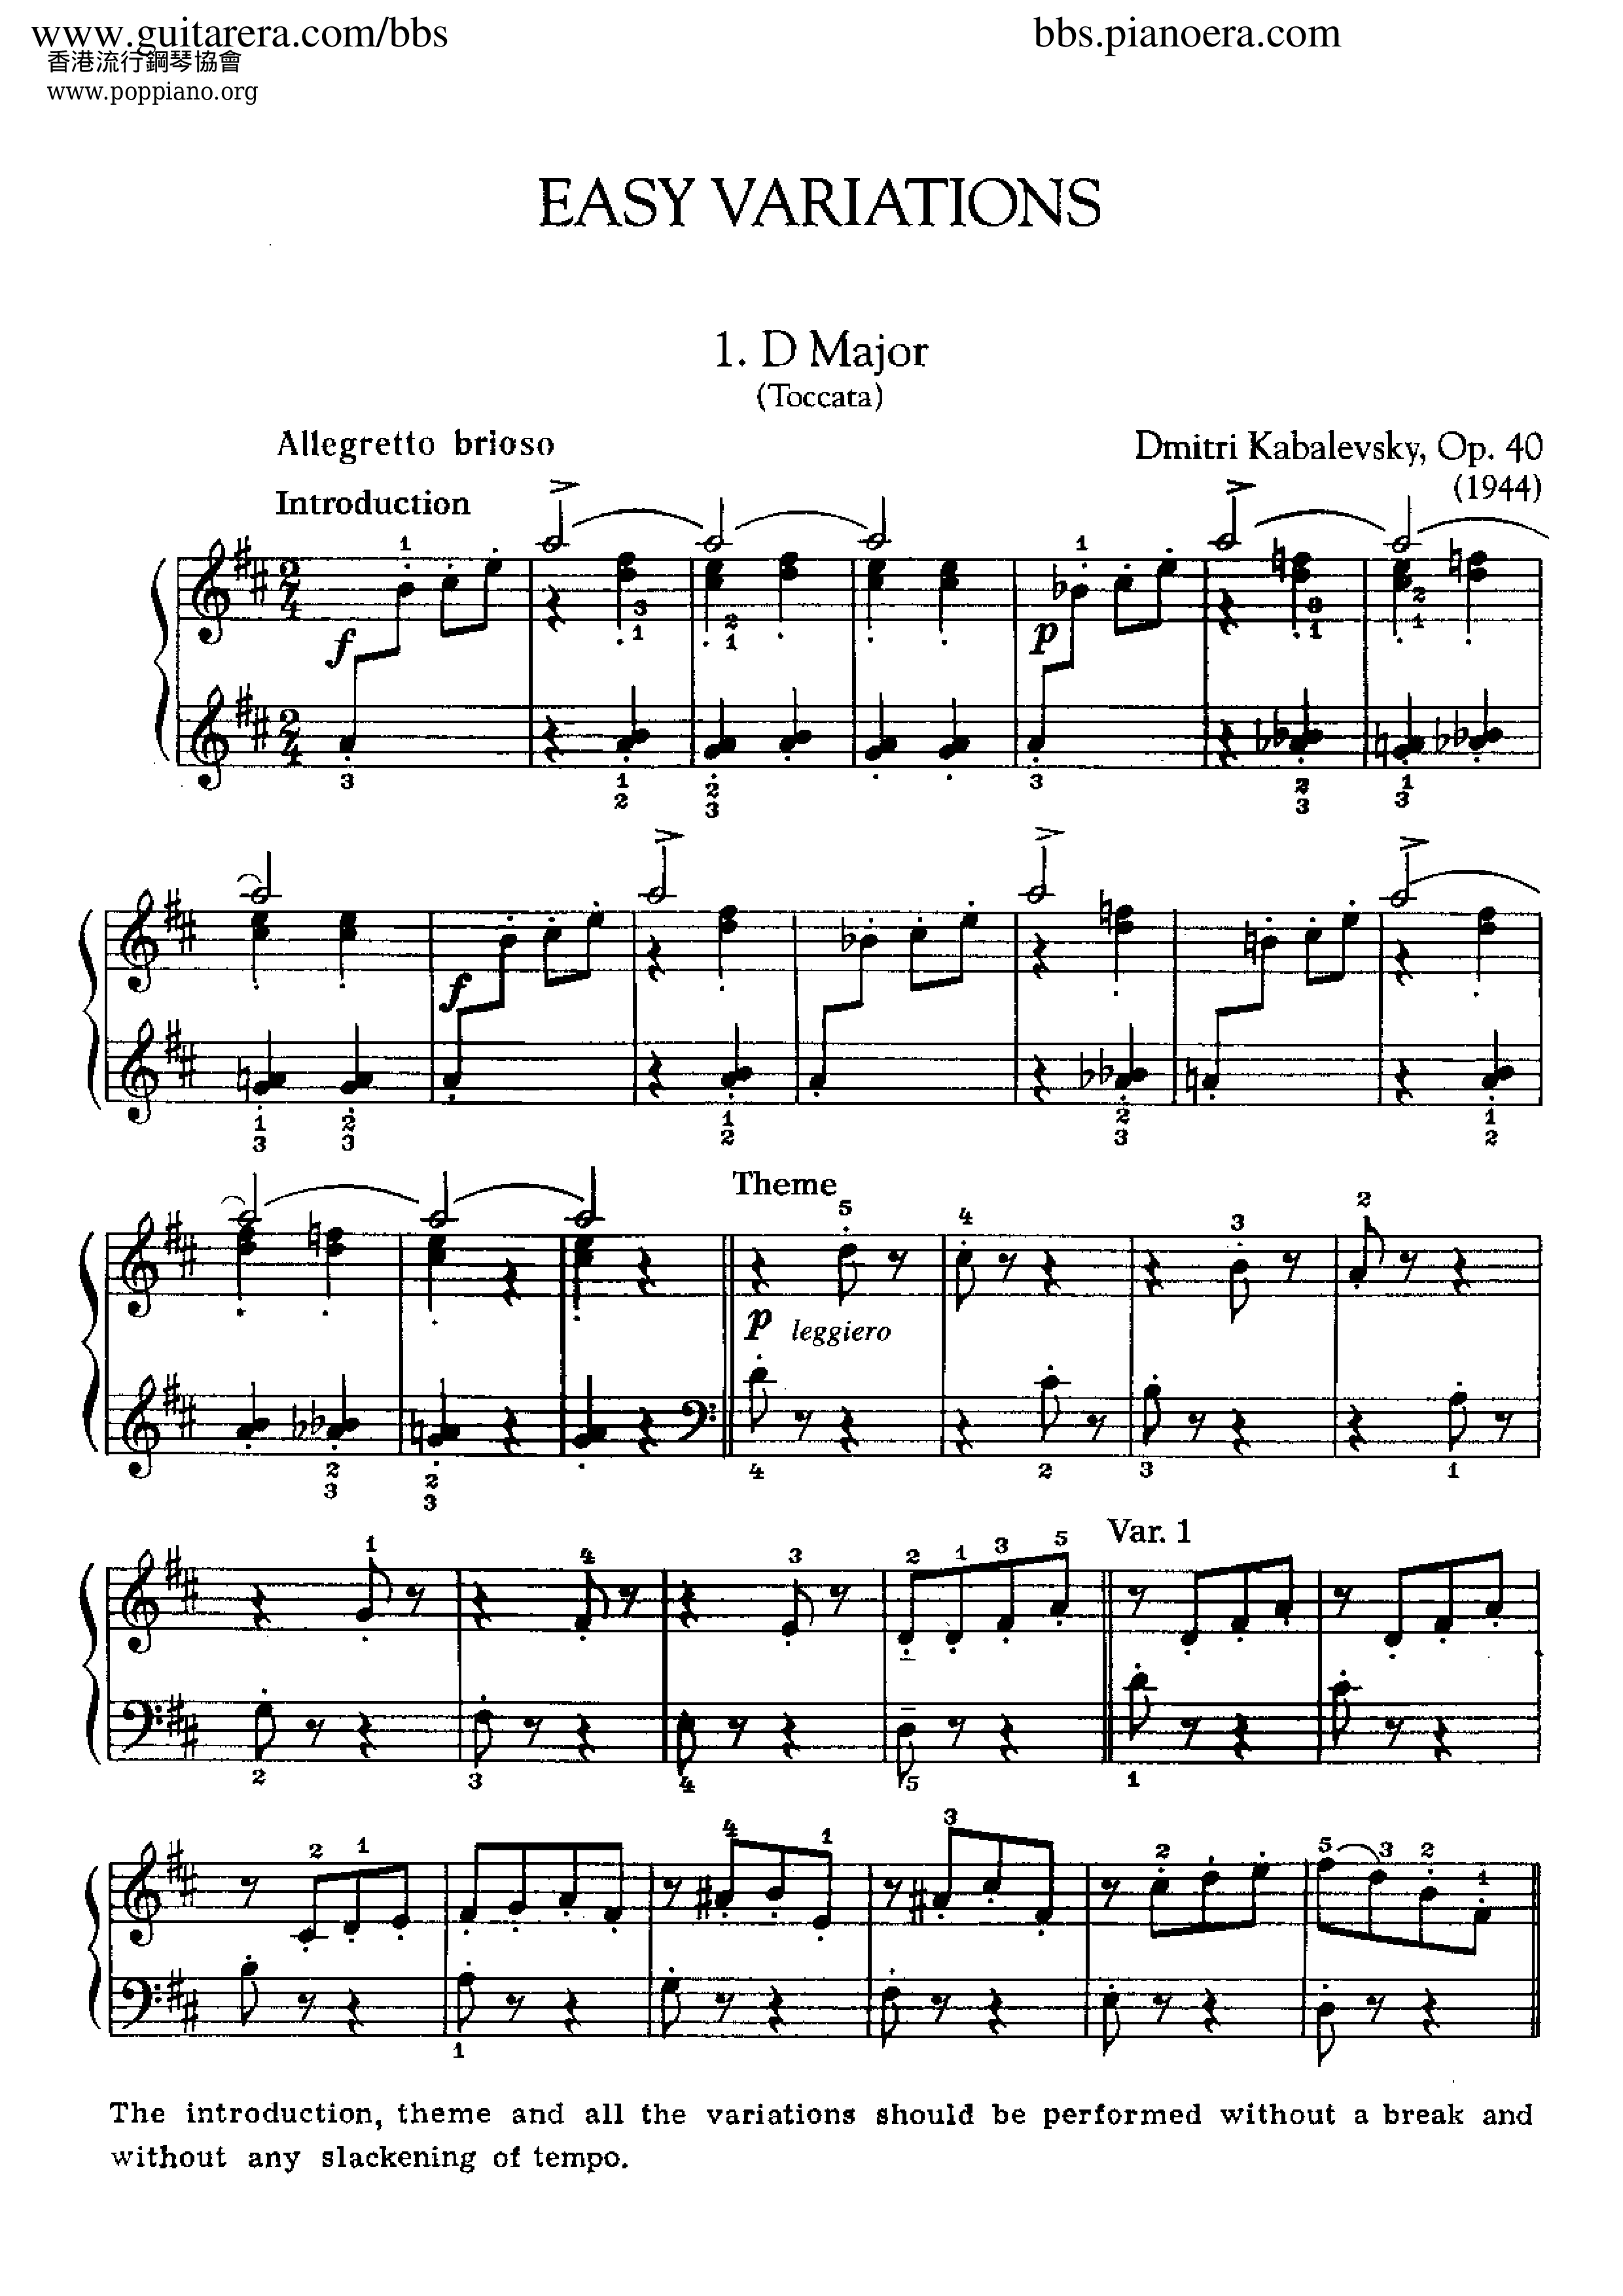 Easy Variations op. 40 in D Majorピアノ譜